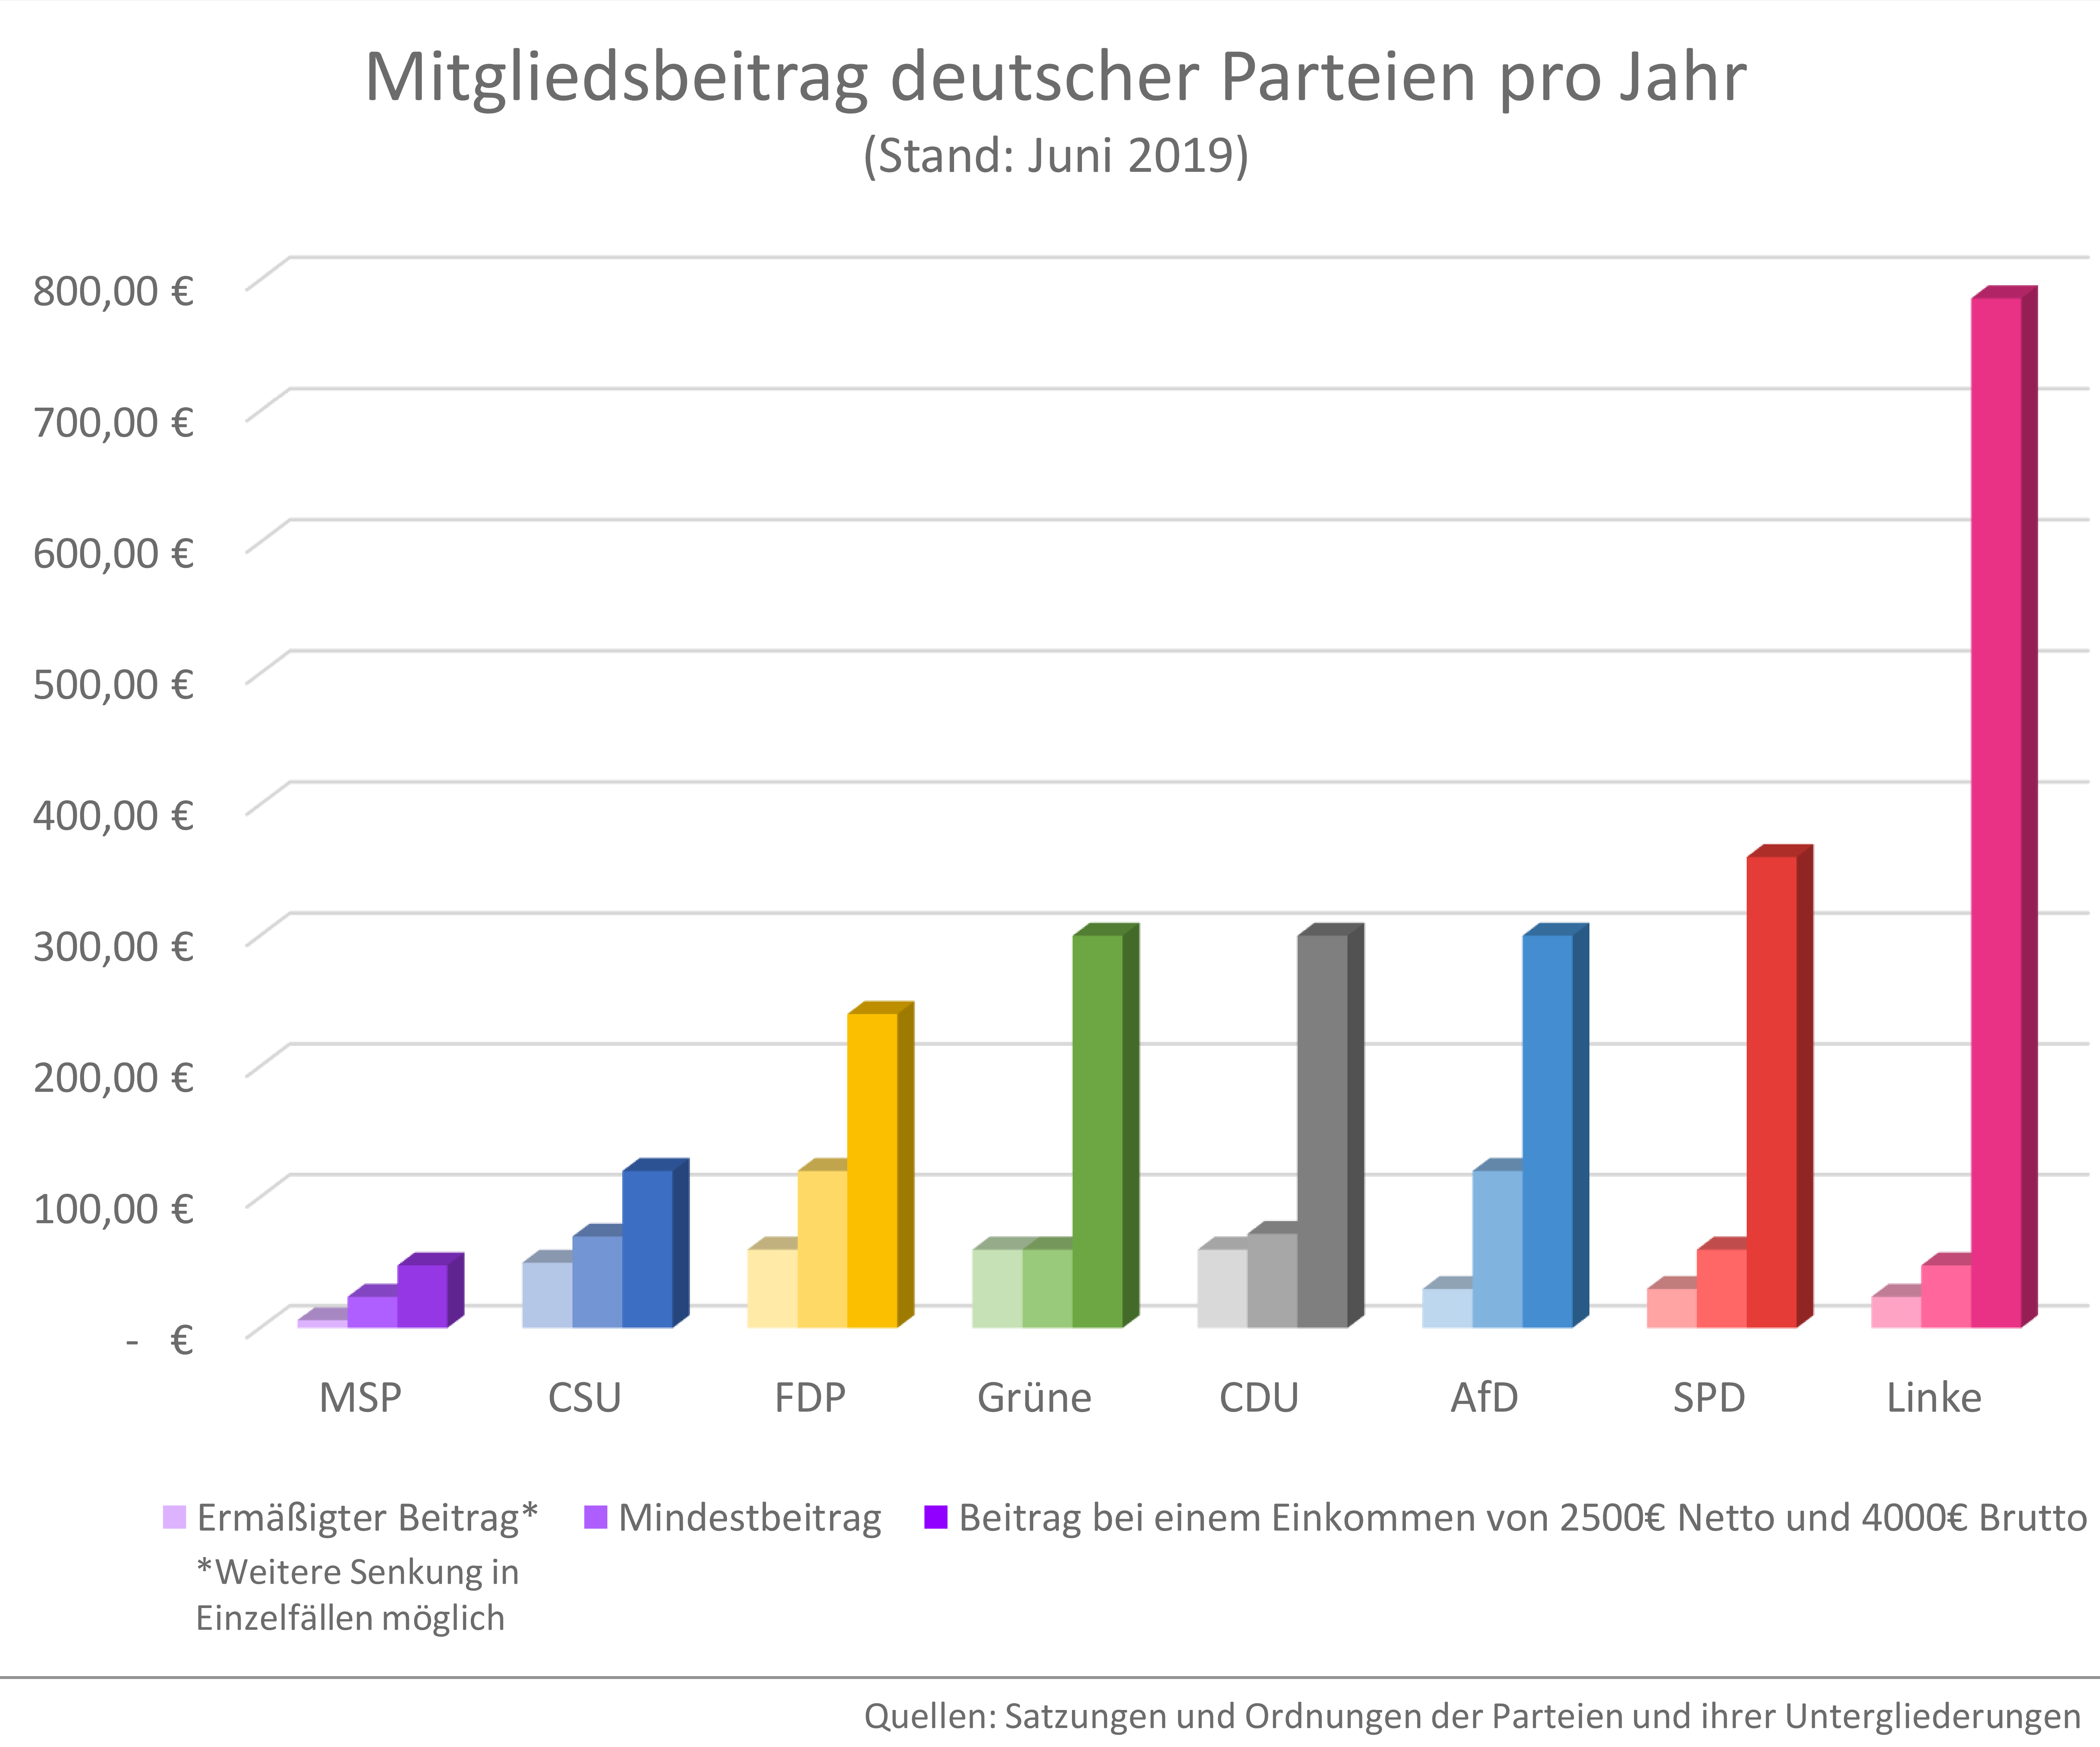 Mitgliedsbeiträge deutscher Parteien im Vergleich 2019